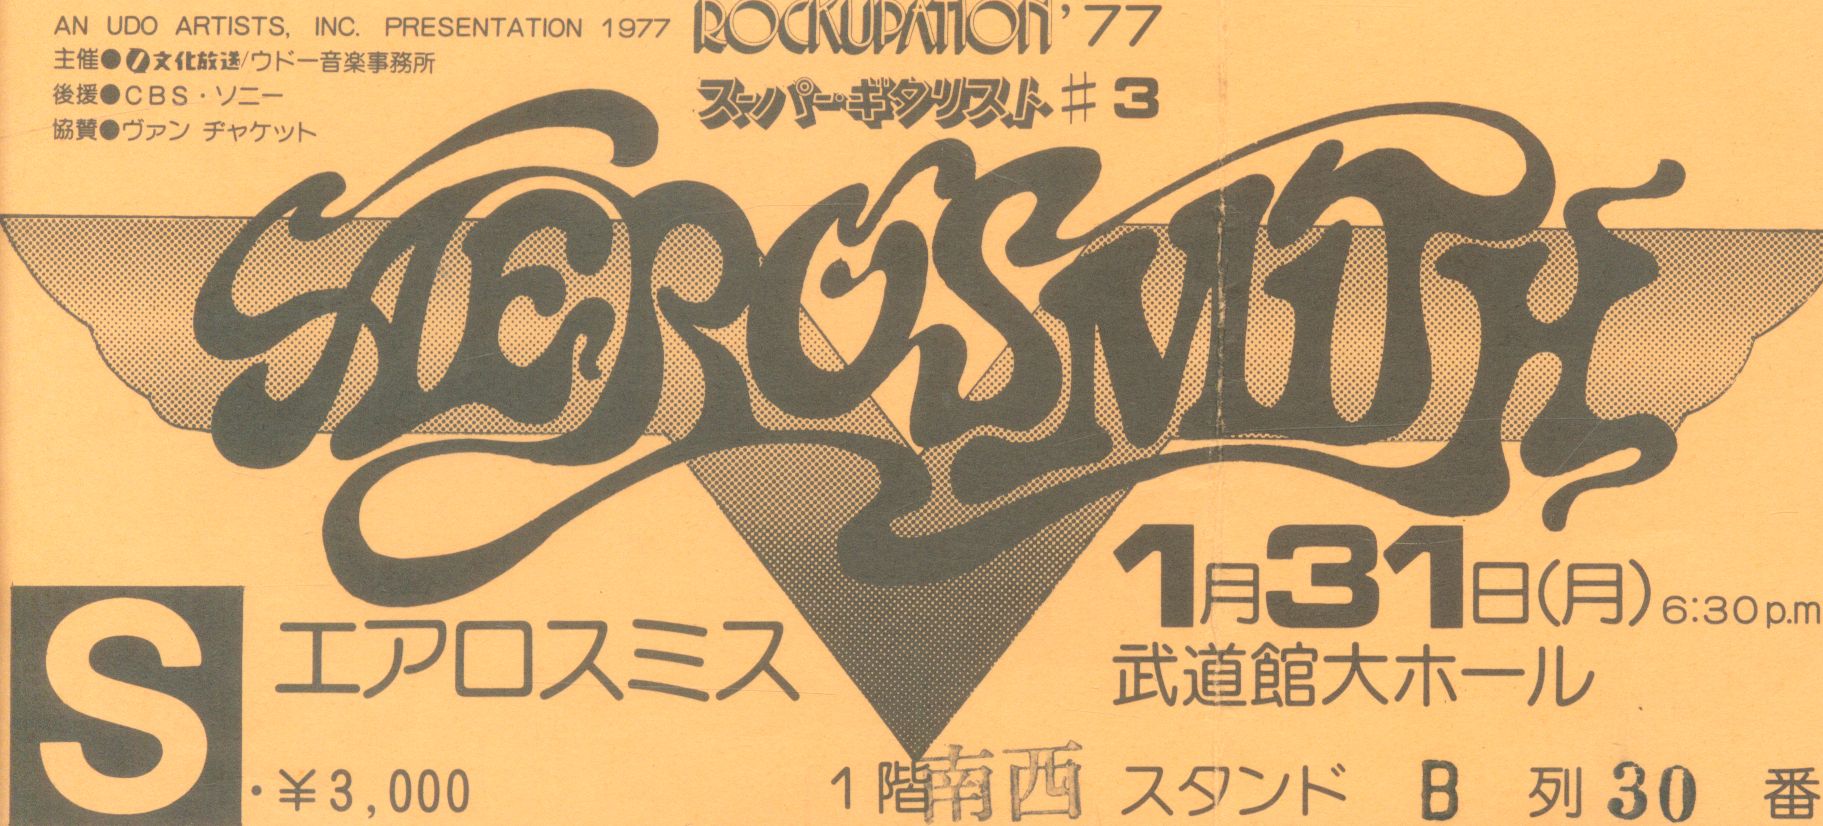 まんだらけ通販 日本武道館 Aerosmith エアロスミス 1977 01 31 チケット半券 渋谷店からの出品